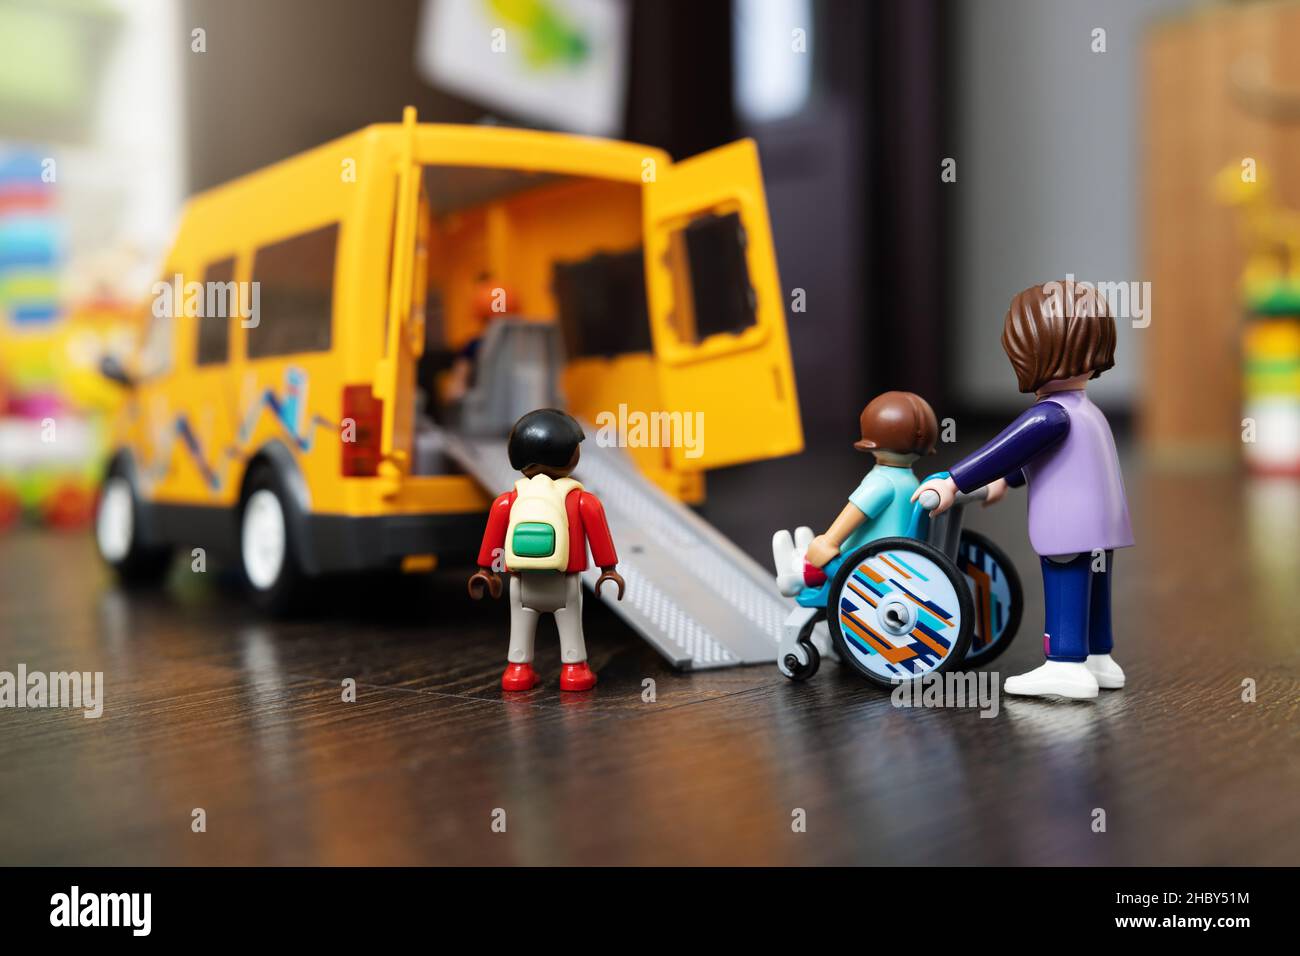 Schulbus-Transport für behinderte Kinder im Rollstuhlkonzept Stockfoto